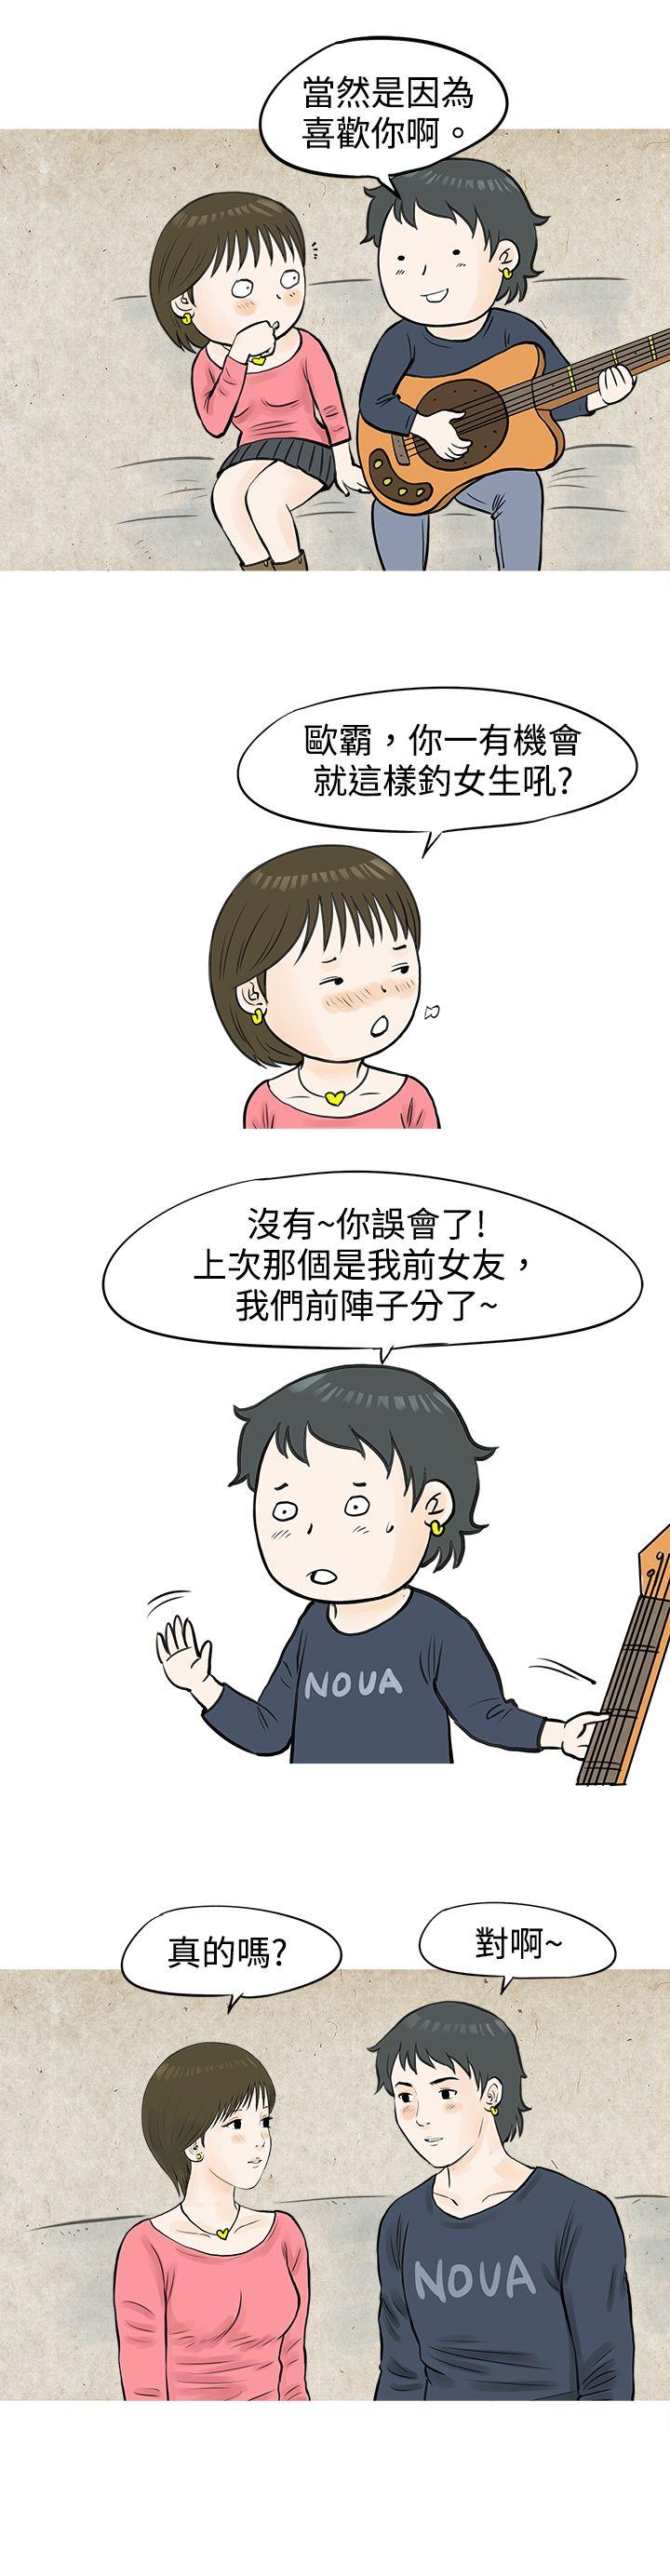 韩国污漫画 秘密Story 发生在热音社的小故事(下) 11